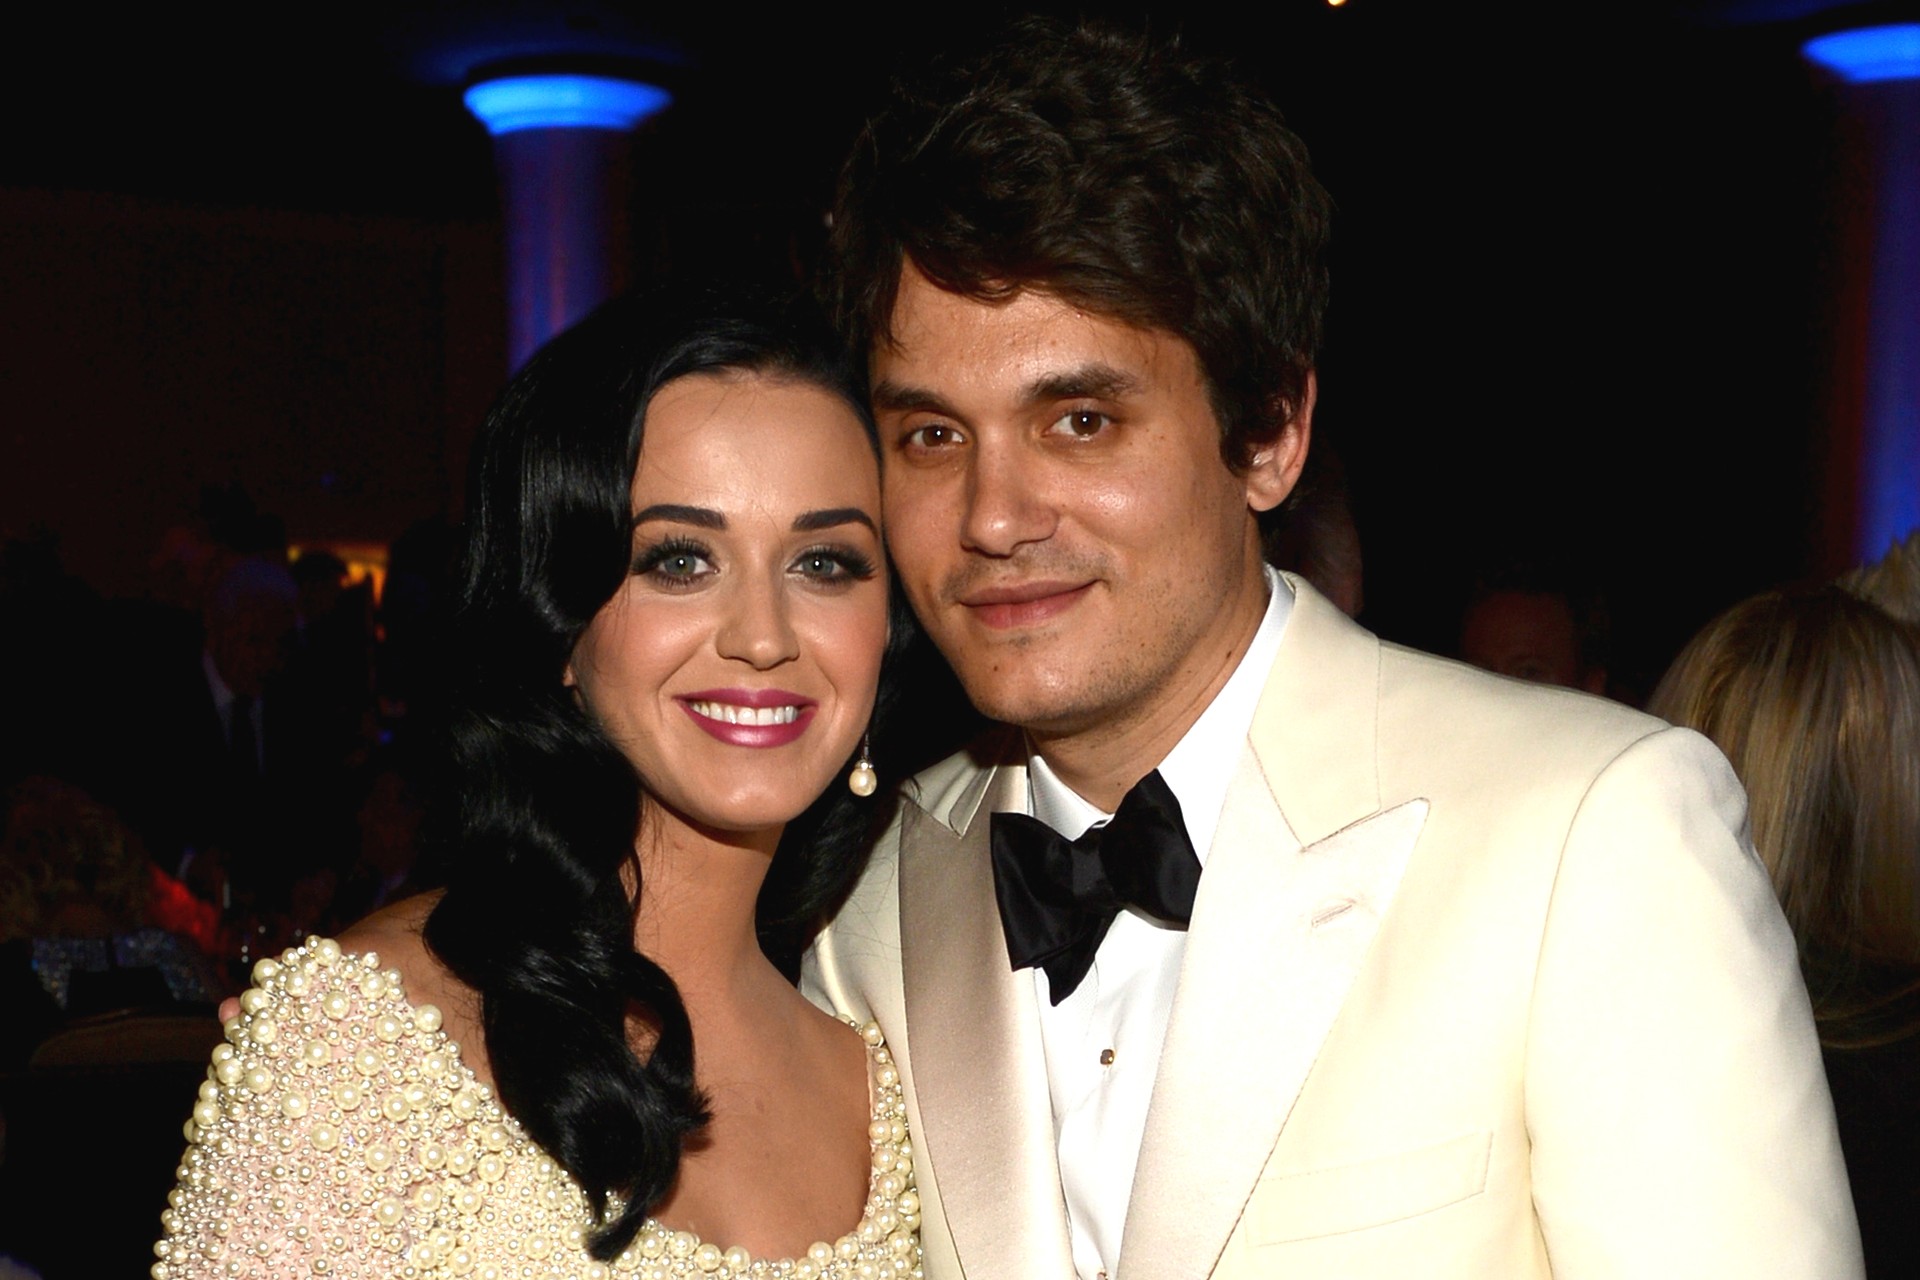 Os cantores Katy Perry e John Mayer começaram um relacionamento cheio de idas e vindas em agosto de 2012. Em fevereiro de 2013, ele chegou a elogiar a relação que tinha com ela mas, semanas depois, terminaram. Só em junho eles foram vistos juntos novamente. Até que, no fim de fevereiro de 2014, veio à tona a notícia de que estão mais uma vez separados. (Foto: Getty Images)